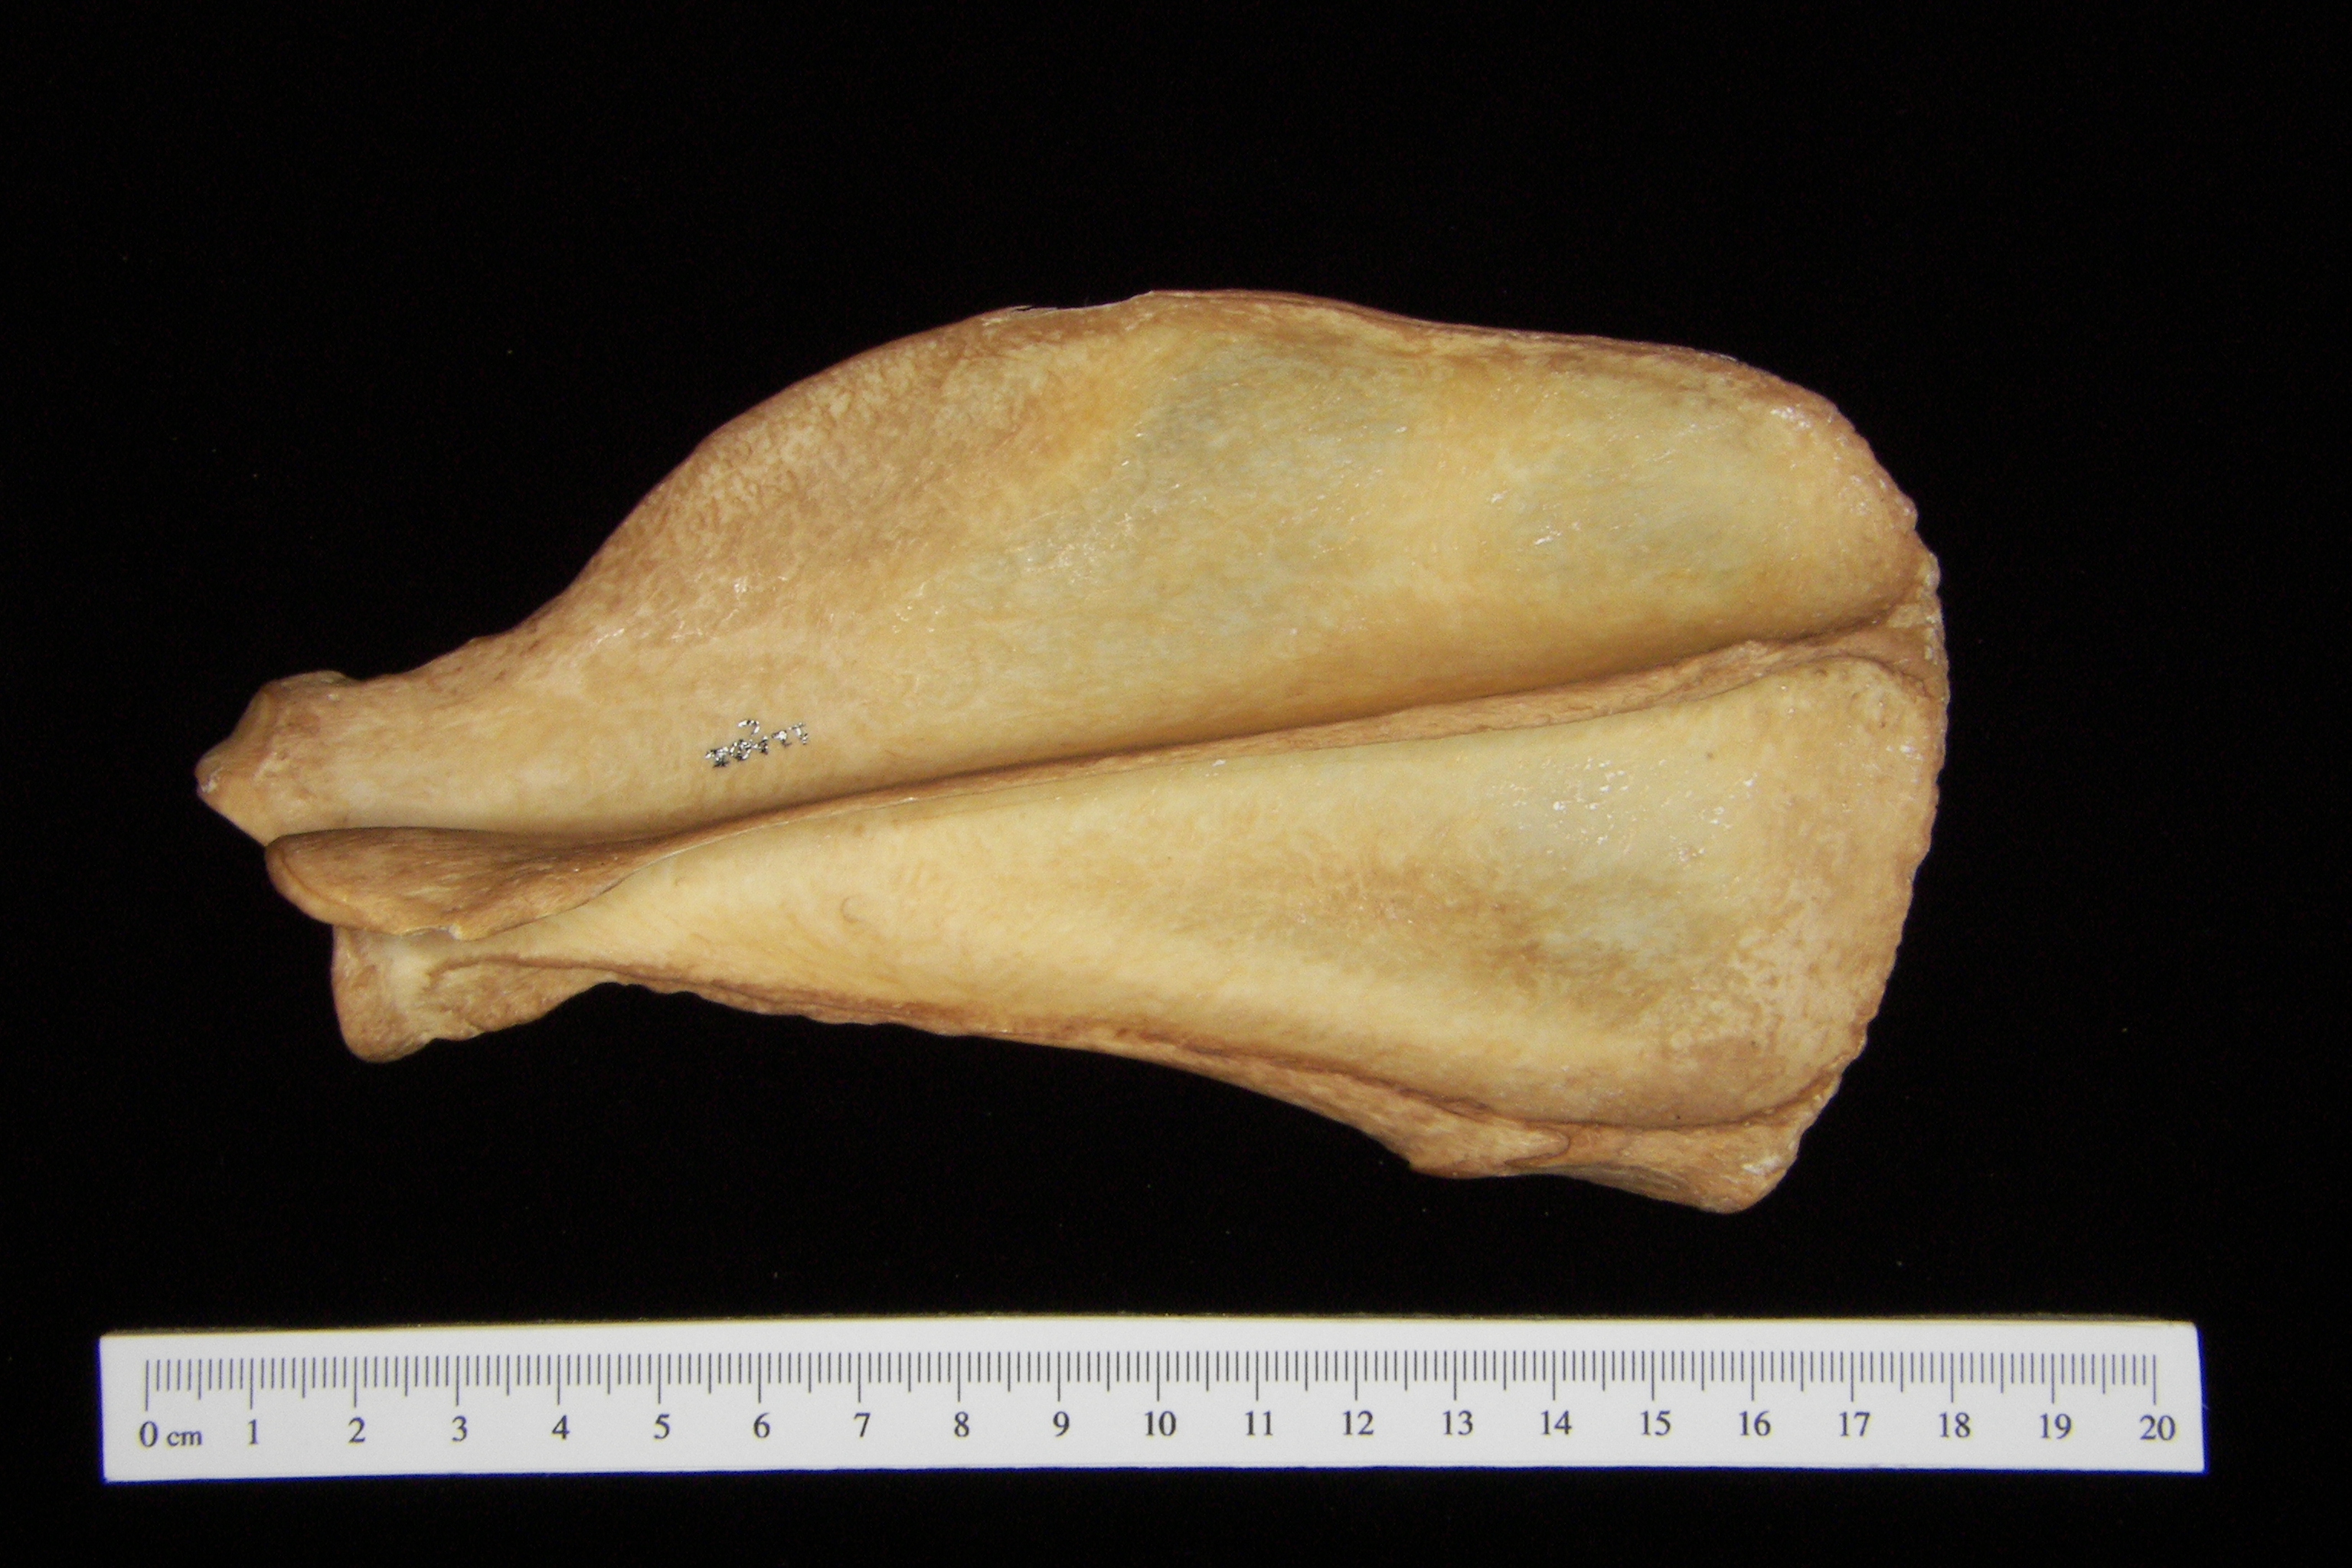 Dog (Canis lupus familiaris) left scapula, posterior view